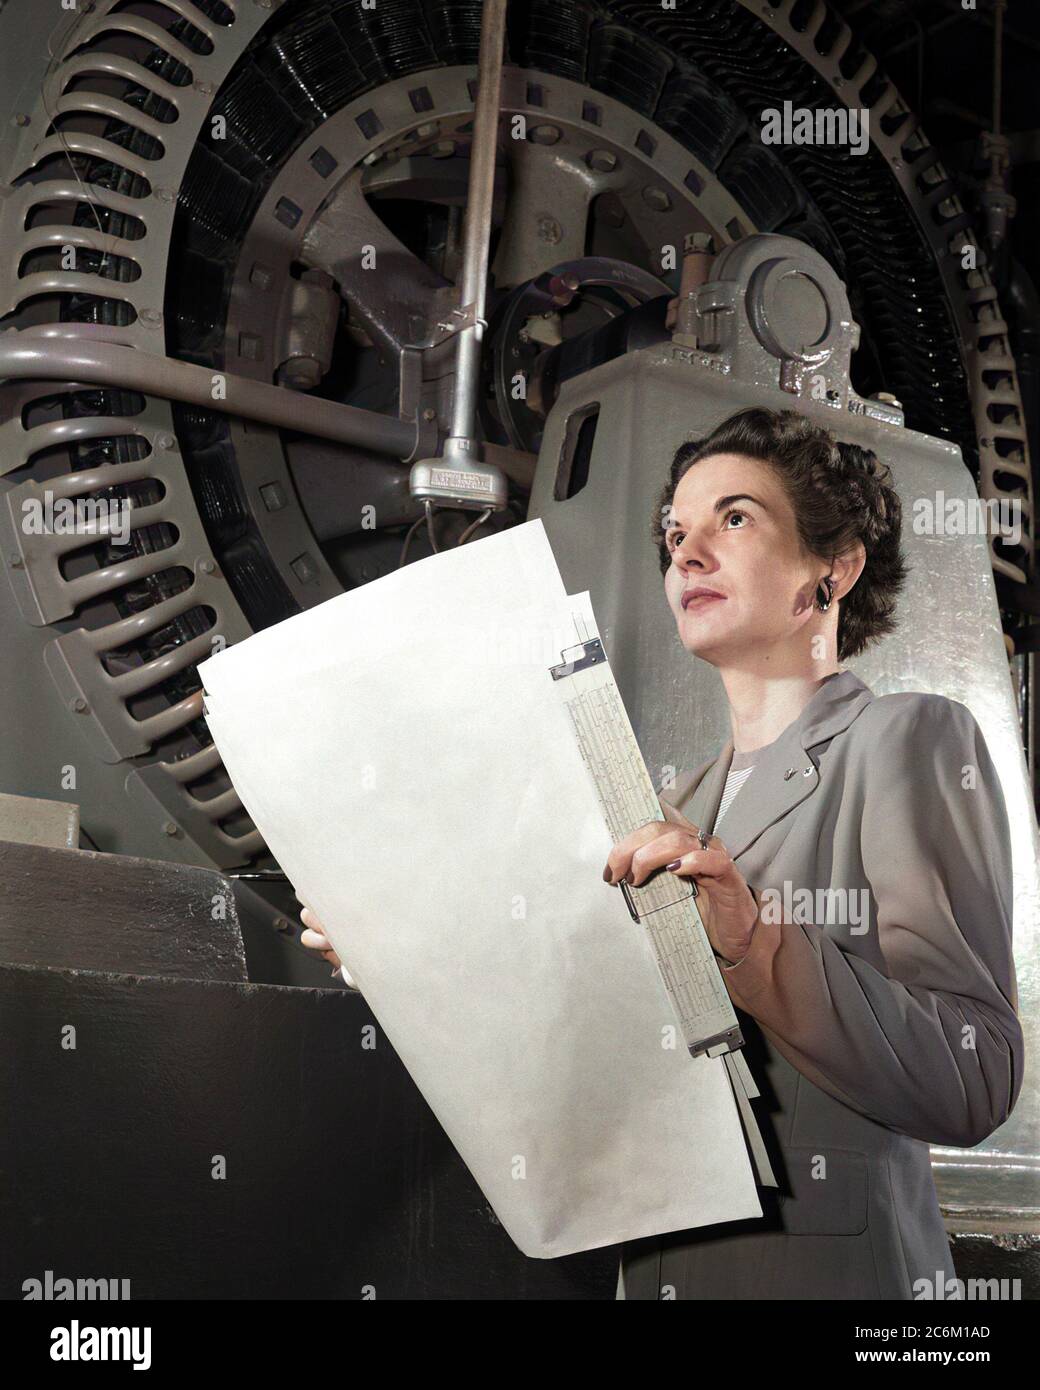 1952, USA: Die amerikanische Elektroingenieurin Frau KITTY Wingfield O'BRIEN JOYNER (1916 - 1993) der NASA, bei der Arbeit, Experte für Elektronik, am LANGLEY FORSCHUNGSZENTRUM. In diesem Foto Analyse des Betriebs einer Windtunnelturbine bei NACA Langley im Jahr 1952 . Erinnert wie die erste Frau Ingenieur am Memorial Langley Aeronautical Laboratory . DIGITAL EINGEFÄRBT .- NASA - N.A.S. - die Nationale Luft- und Raumfahrtbehörde - foto storiche - foto storica - scienziato - Wissenschaftler - INGEGNERE DONNA - INGEGNERIA ELETTRONICA - DONNE DONNA - AL LAVORO - AERONAUTICA --- Archivio Stockfoto